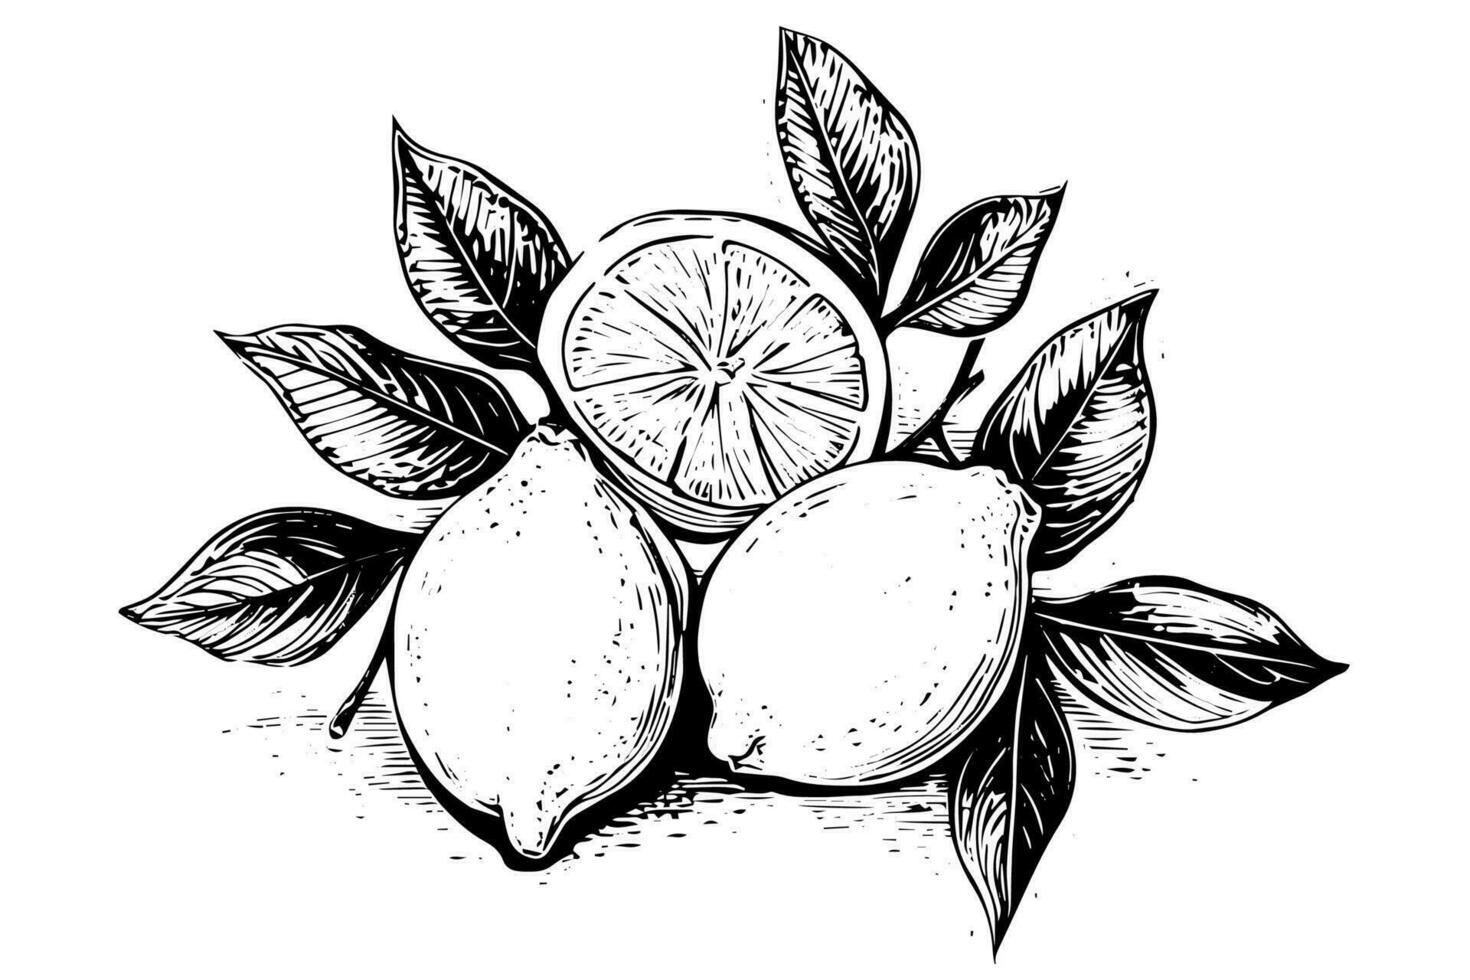 hand- getrokken inkt schetsen vector illustratie van citroen. citrus in gravure stijl vector illustratie.